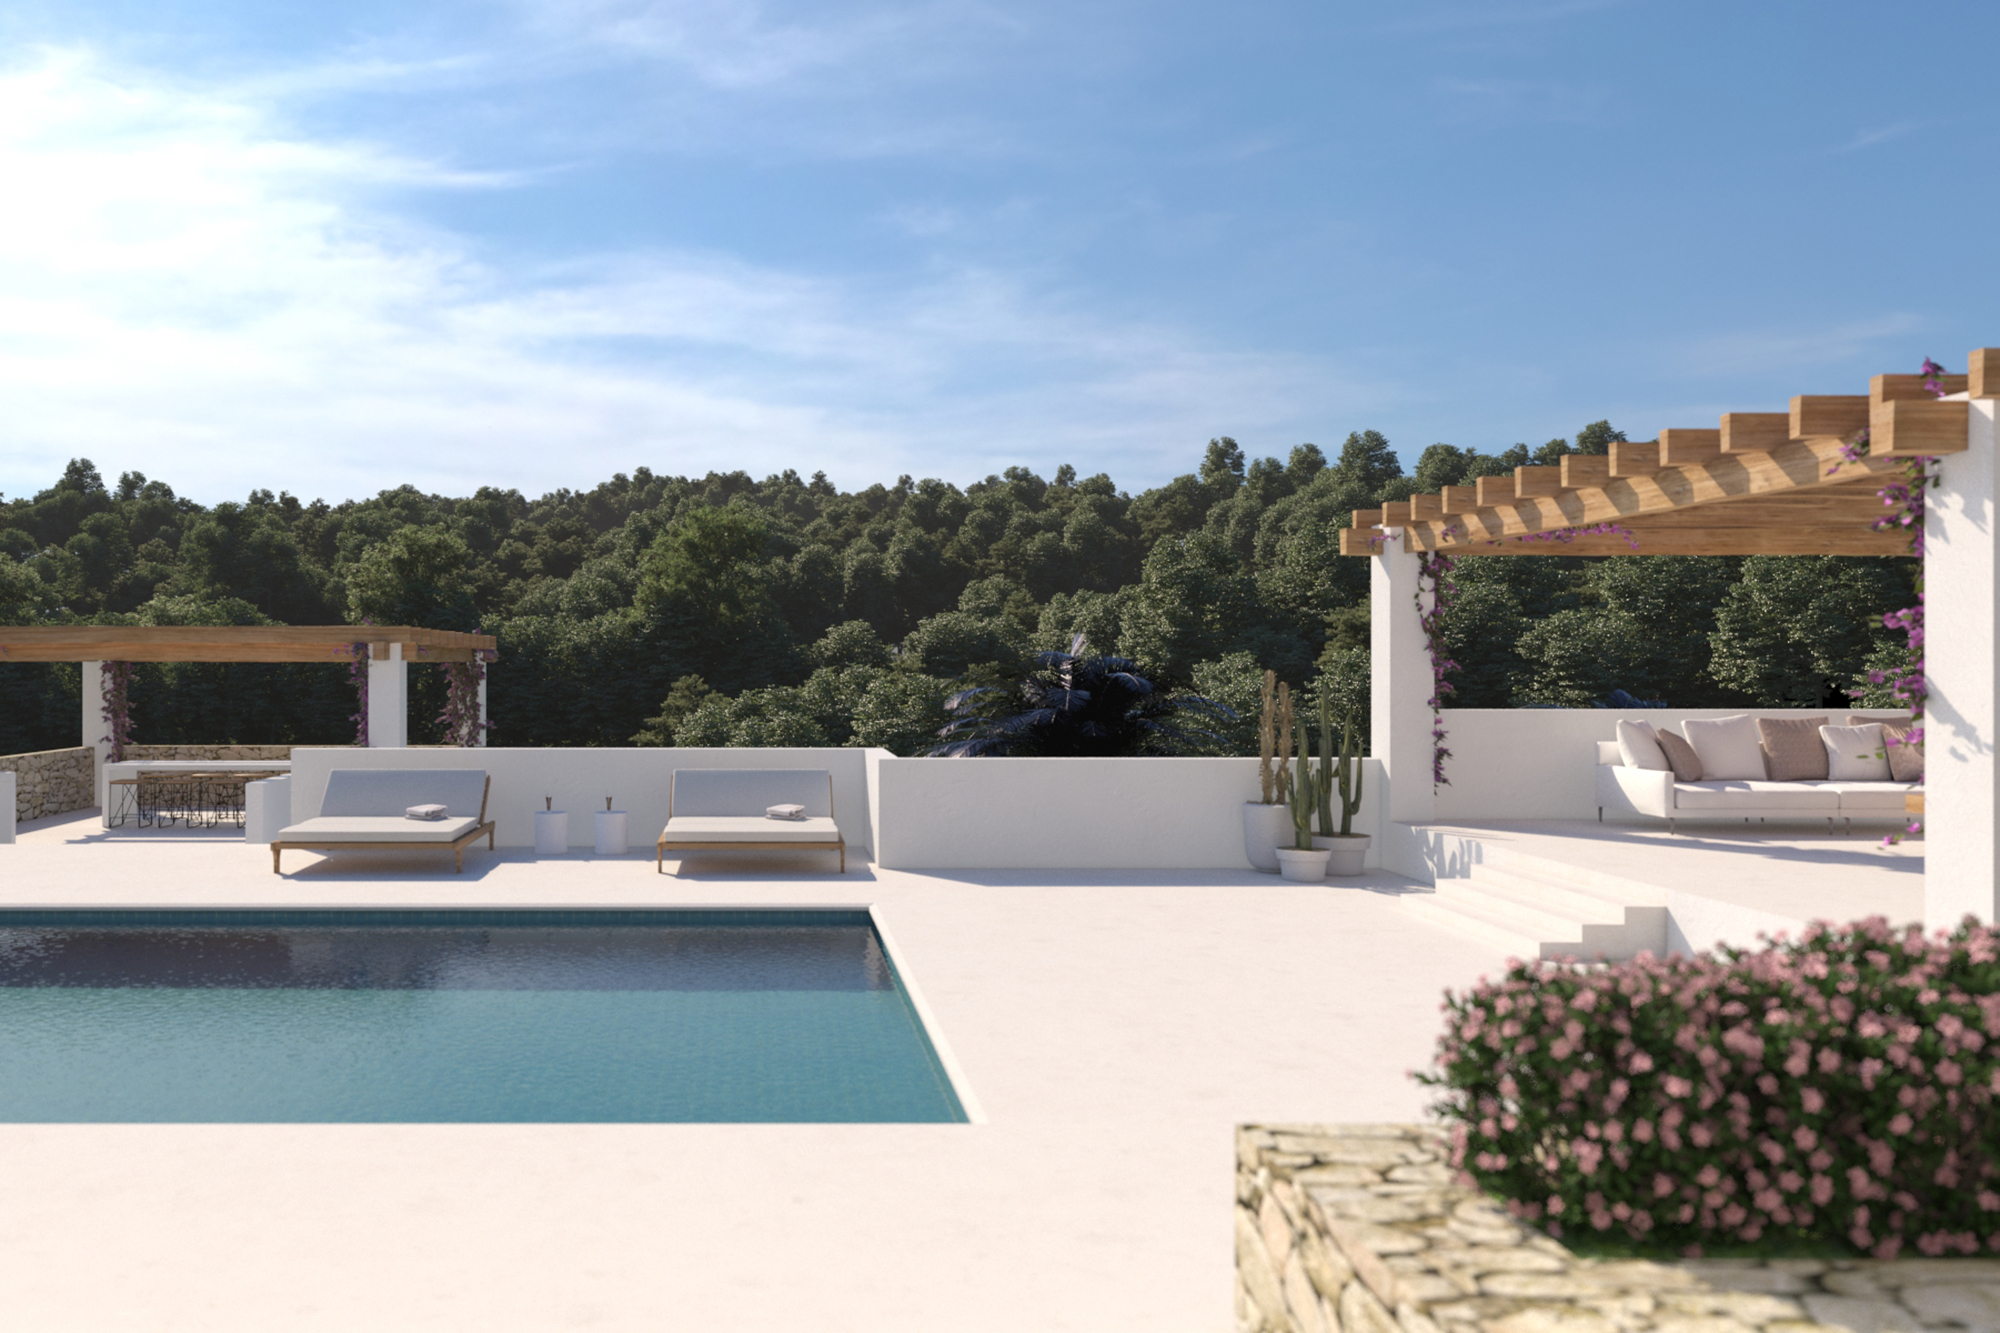 Swimming pool and pergola in Ibiza at Vista Verde in Santa Gertrudis